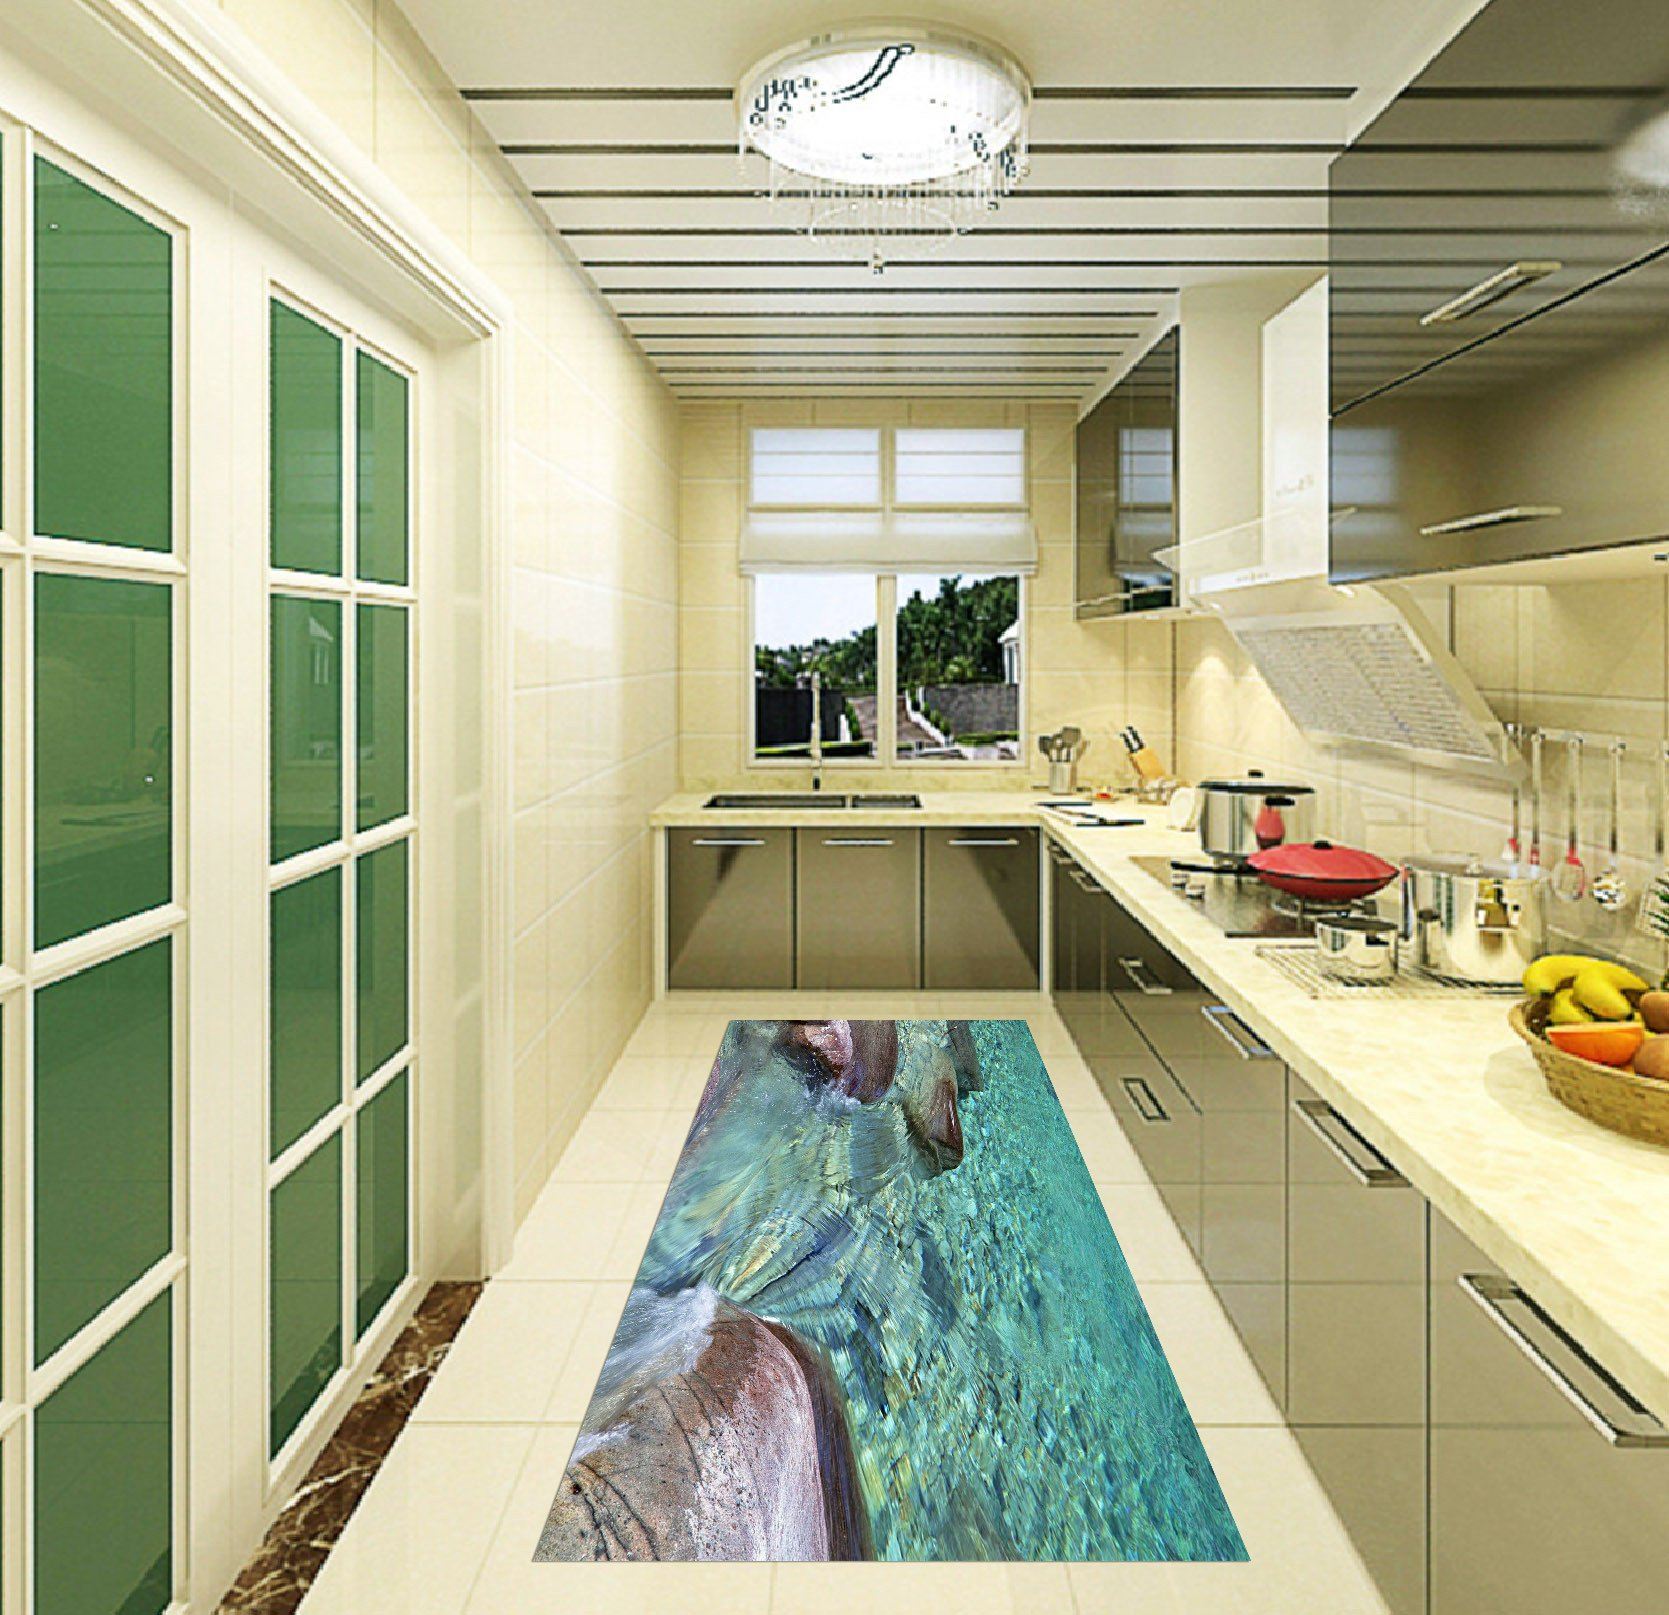 3D Crystal Clear Water 18 Kitchen Mat Floor Mural Wallpaper AJ Wallpaper 